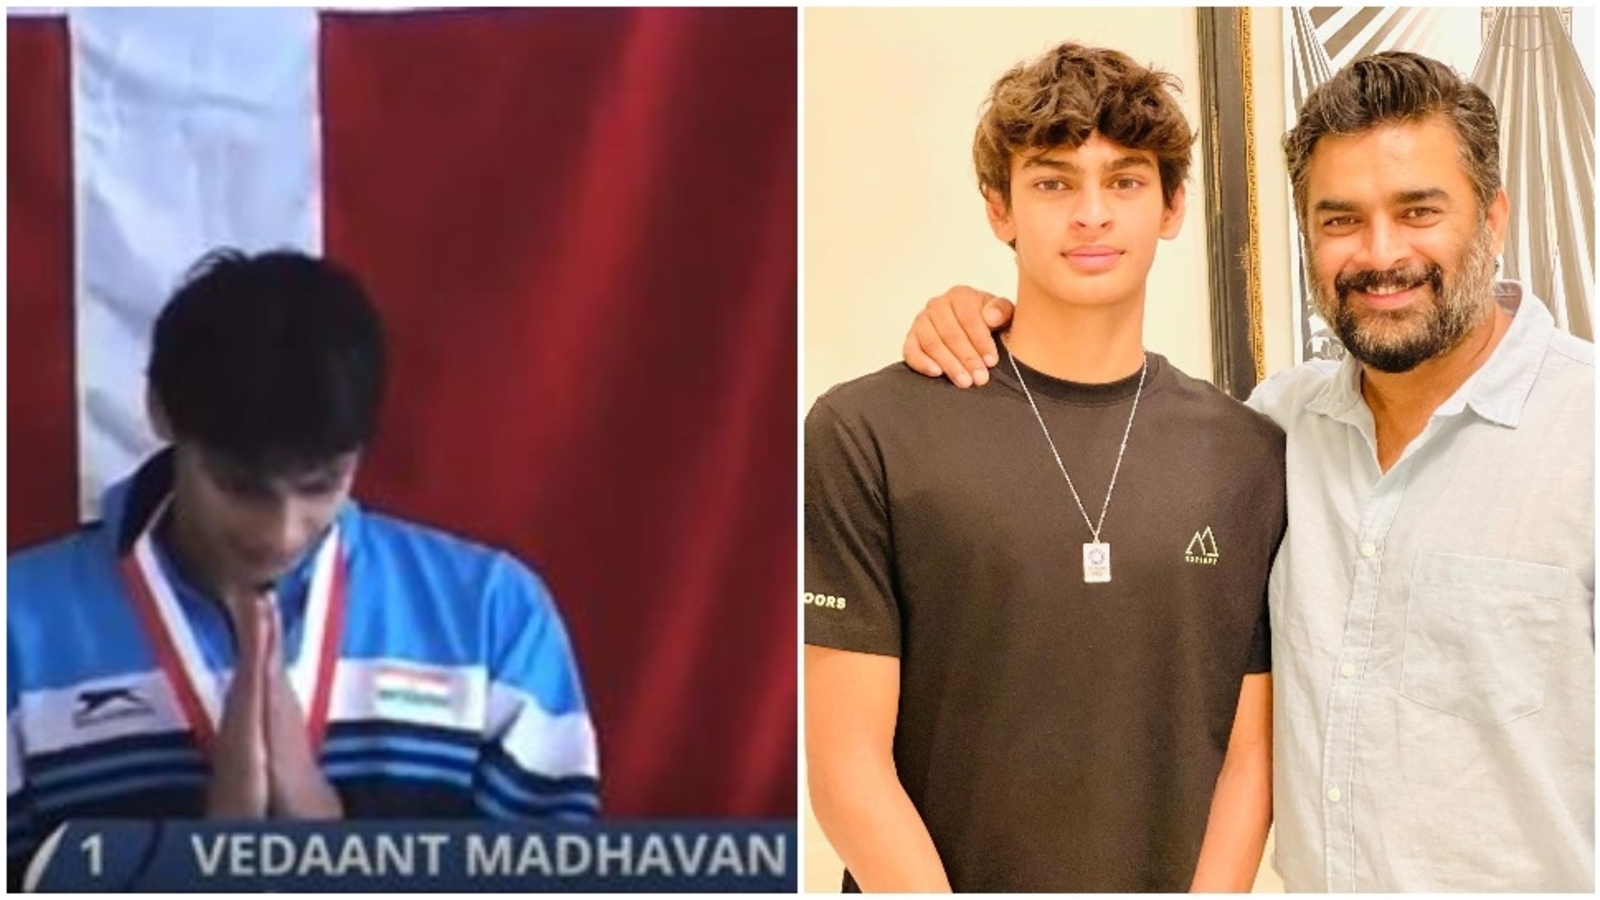 R Madhavans ir “pārņemts” pēc tam, kad viņa dēls Vidants Madhavans izcīnīja zelta medaļu peldēšanā